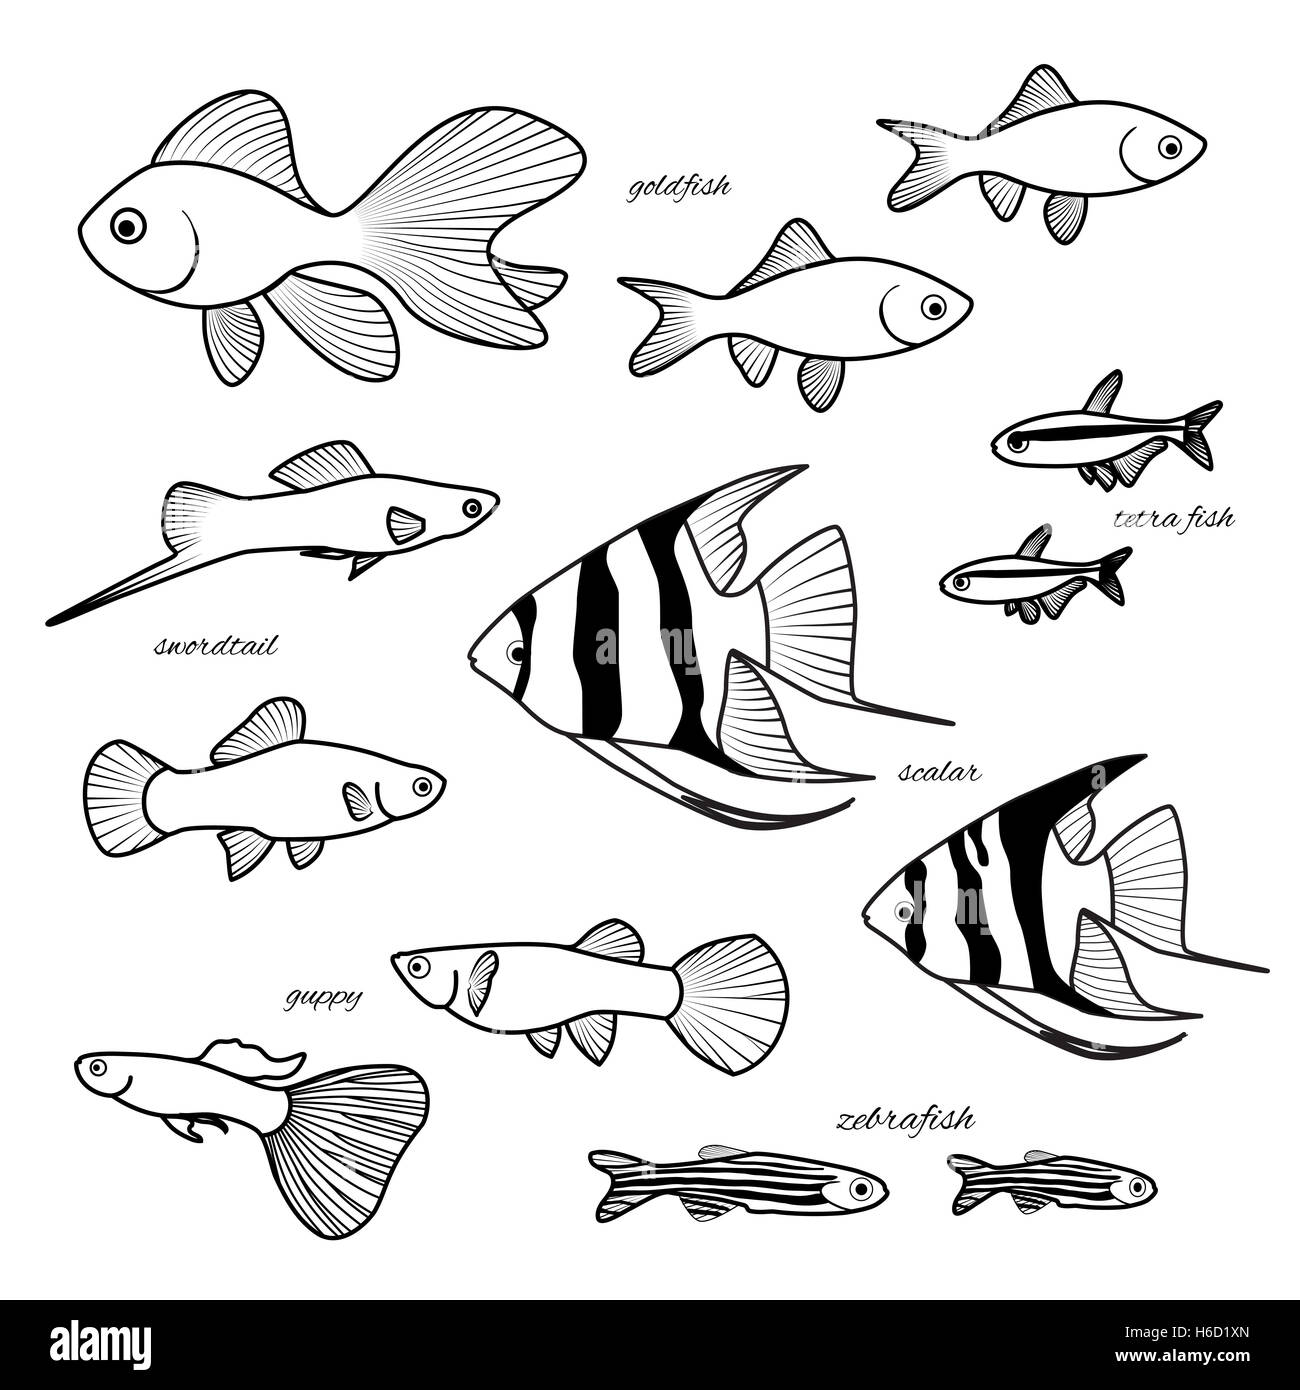 Pesci di acquario collezione. Goldfish, guppy, danio zebrato, scalare, il cardinale o neon tetra pesci, swordtail disegnati a mano illustrazione. X Foto Stock